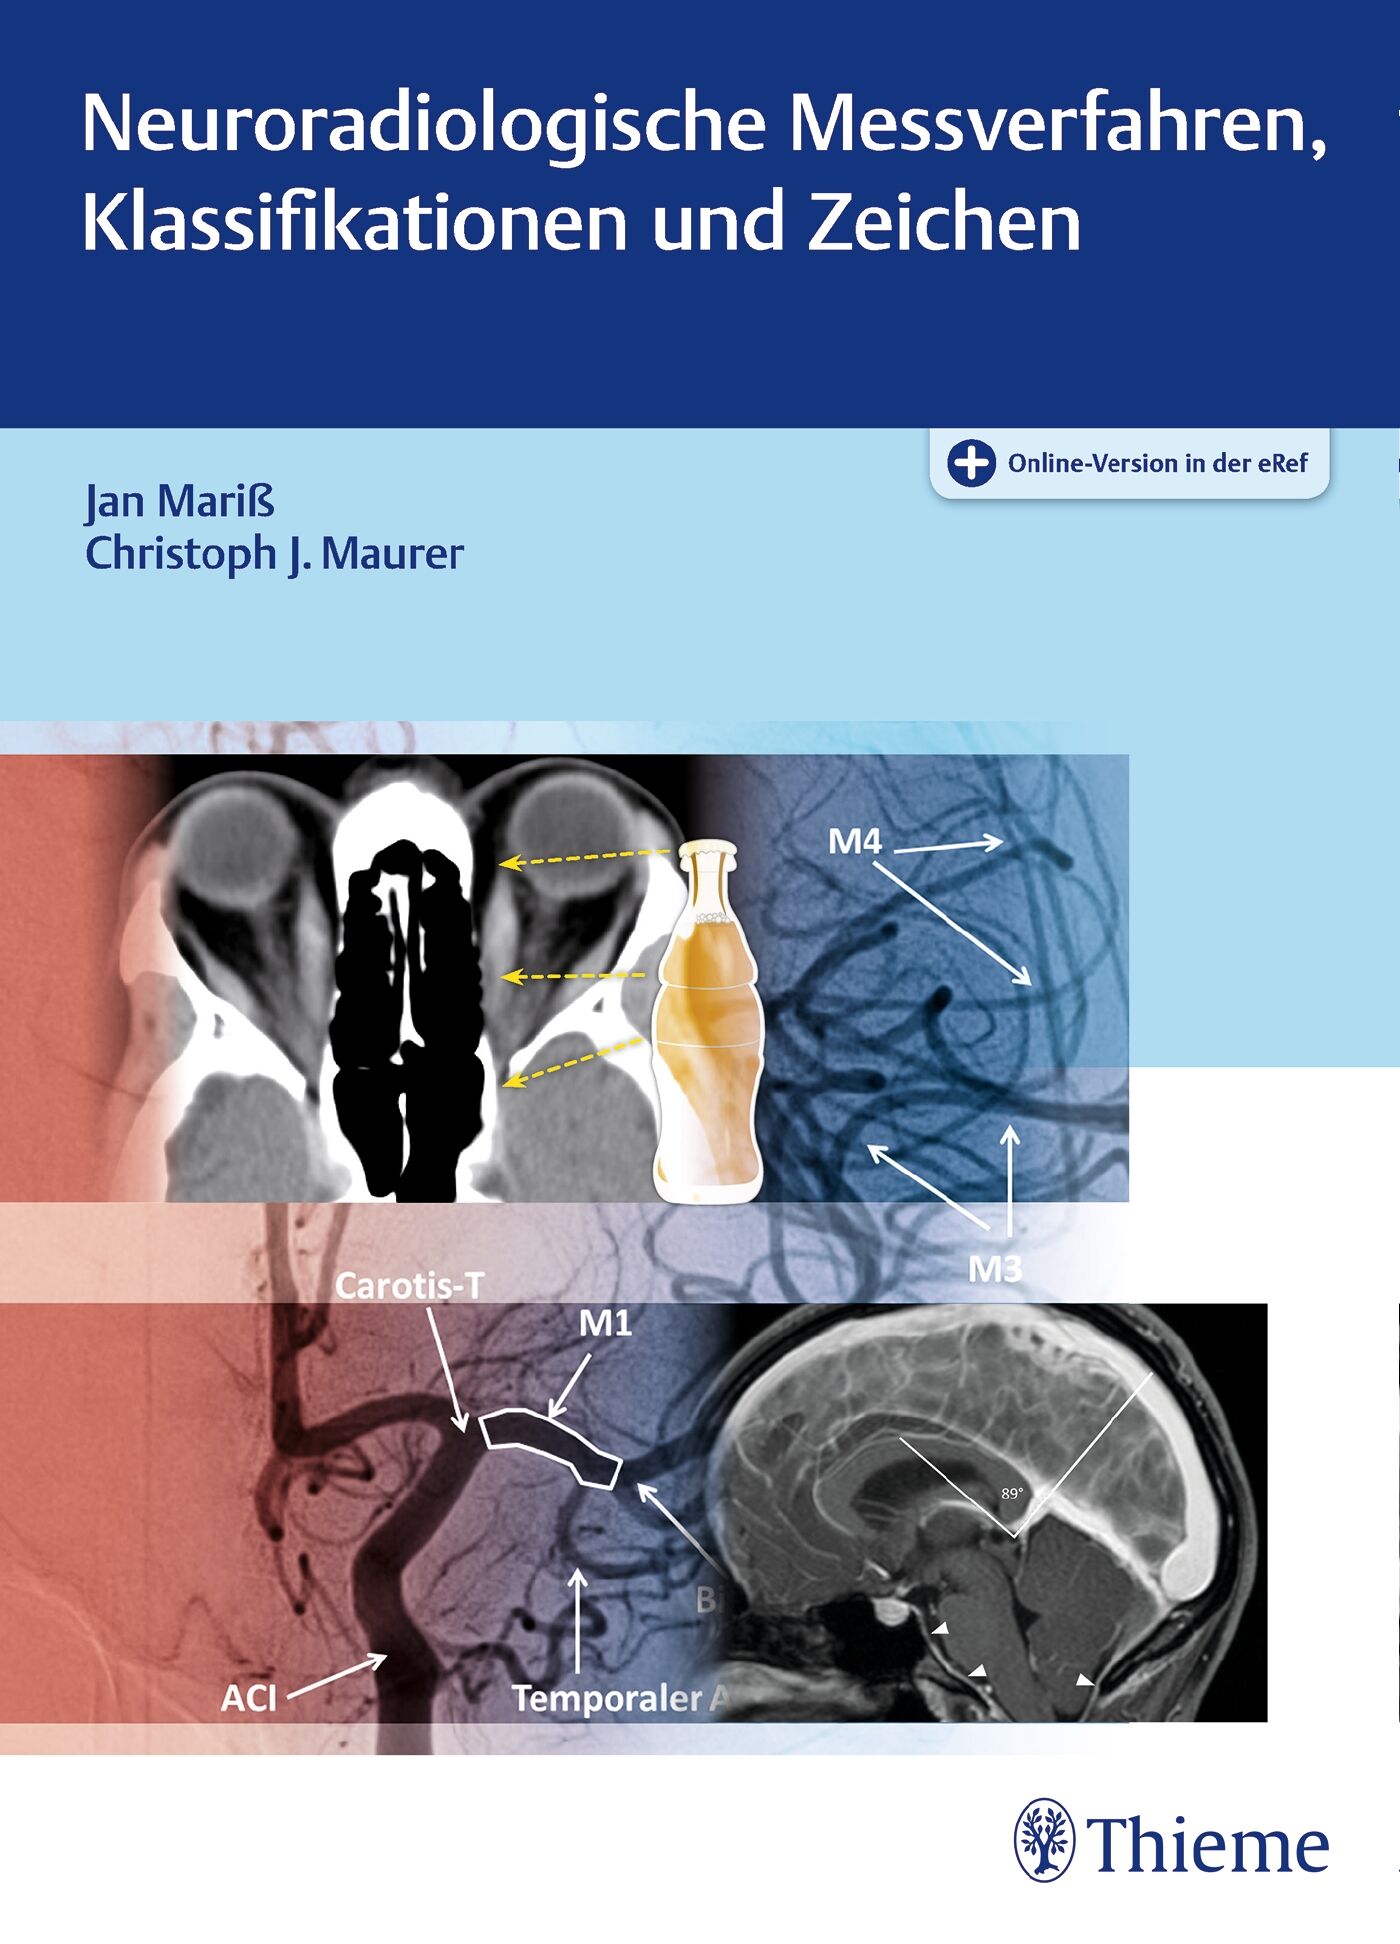 Neuroradiologische Messverfahren, Klassifikationen und Zeichen, 9783131754516